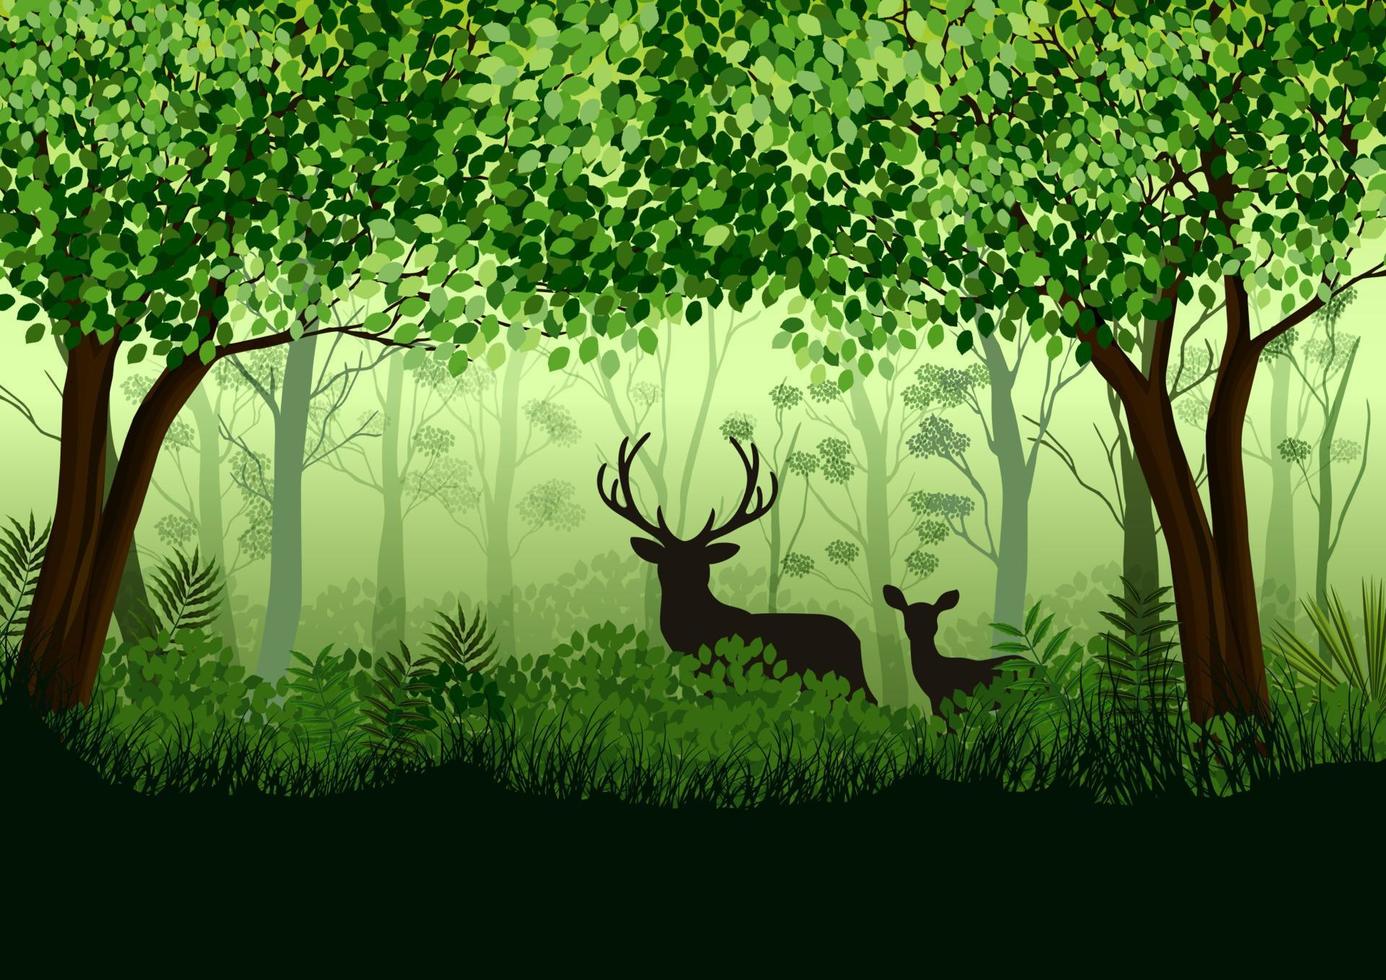 floresta verde com alces selvagens na floresta. ilustração vetorial vetor